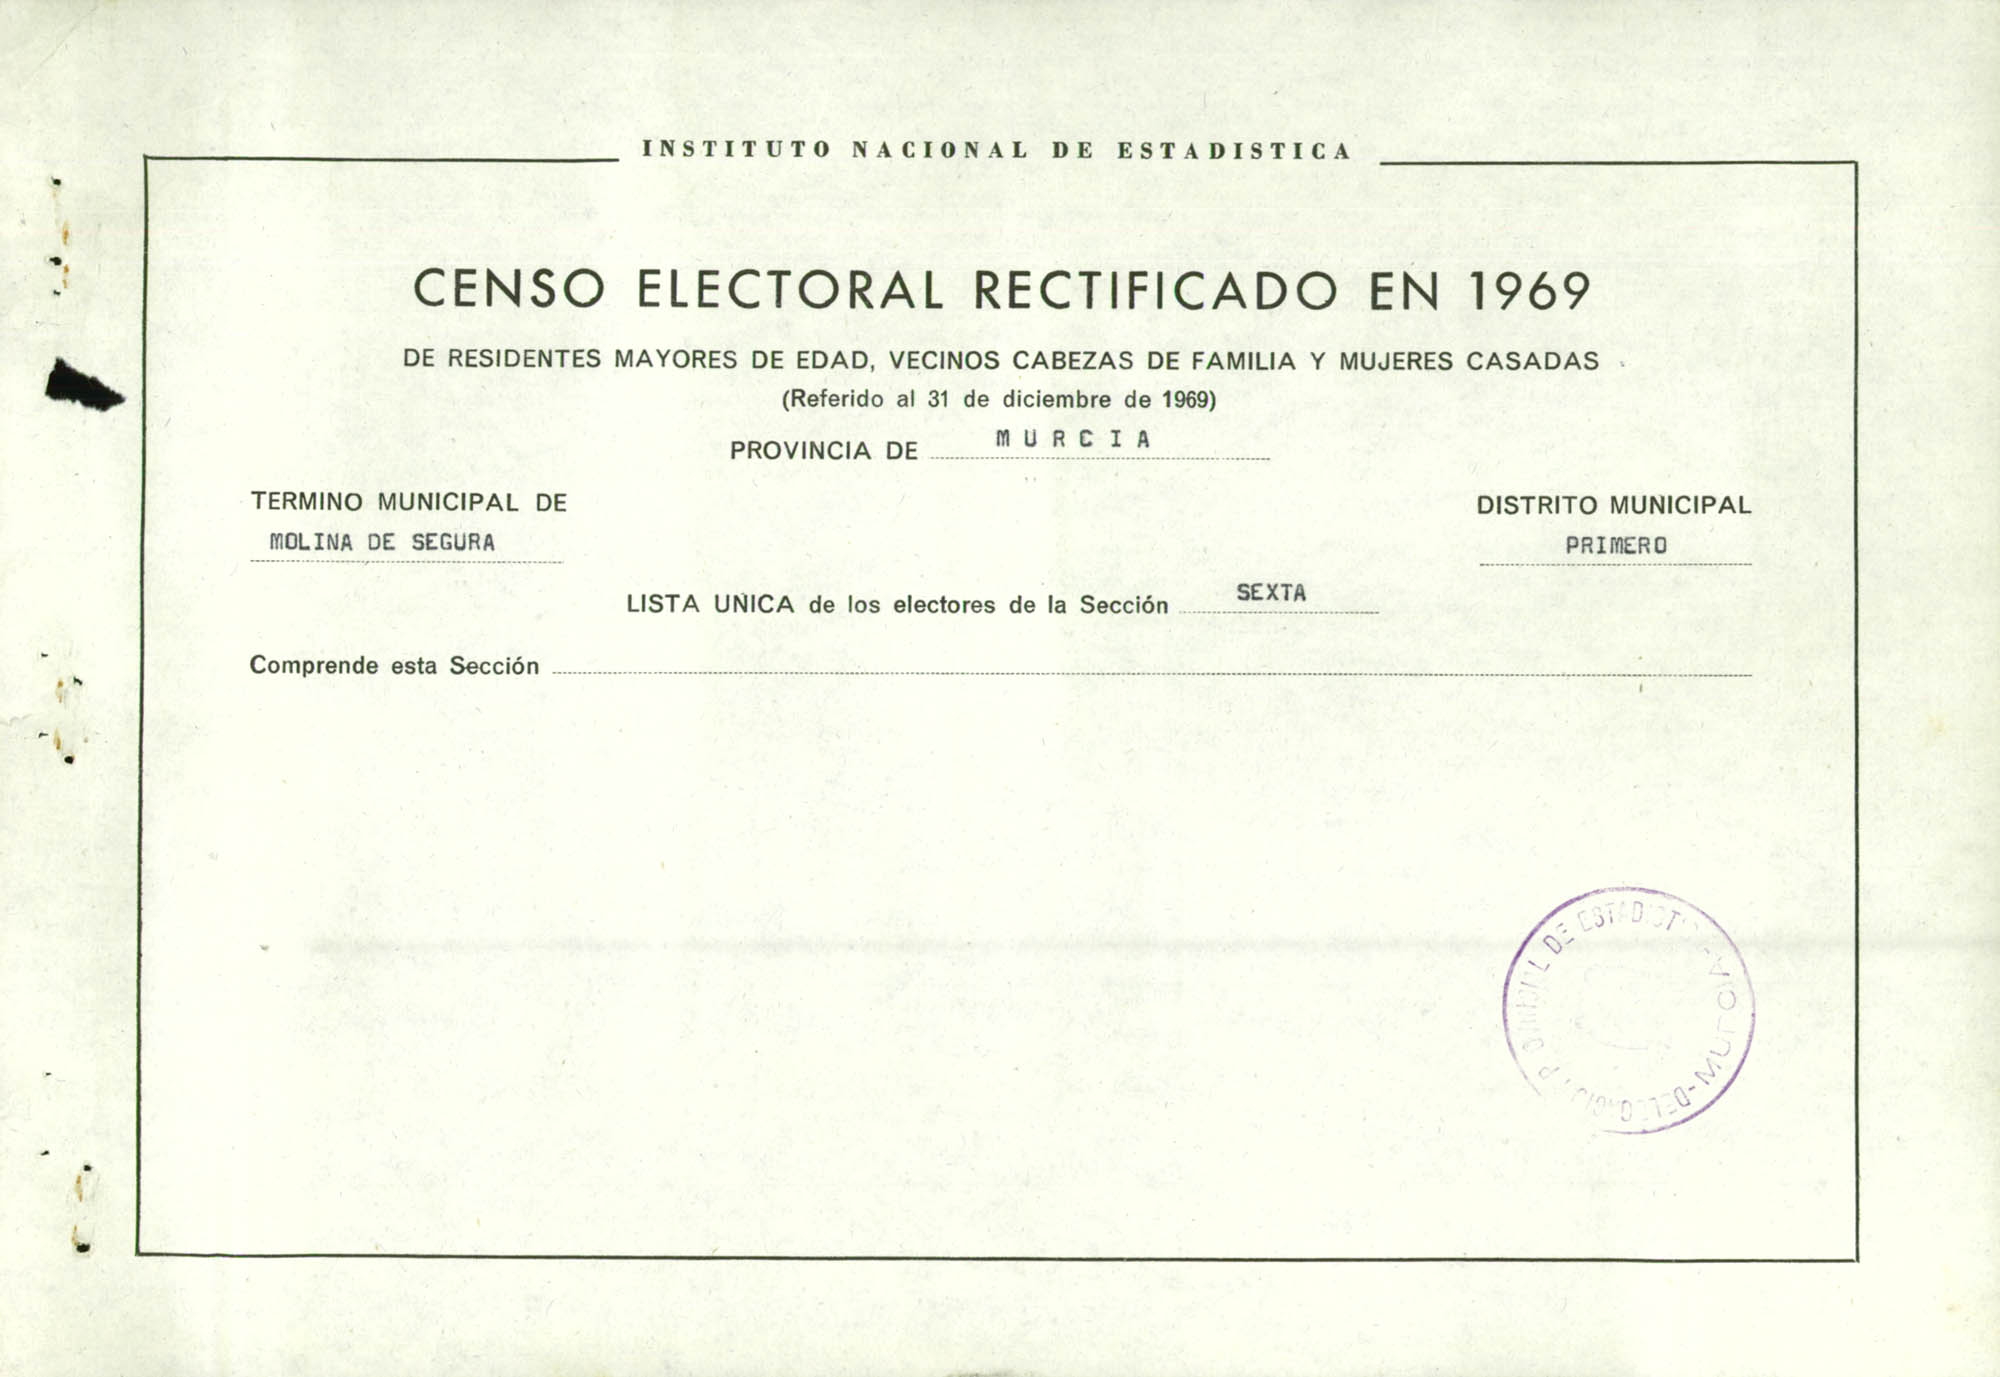 Censo electoral rectificado en 1969: listas definitivas de Molina de Segura, Distrito 1º, sección 6ª.